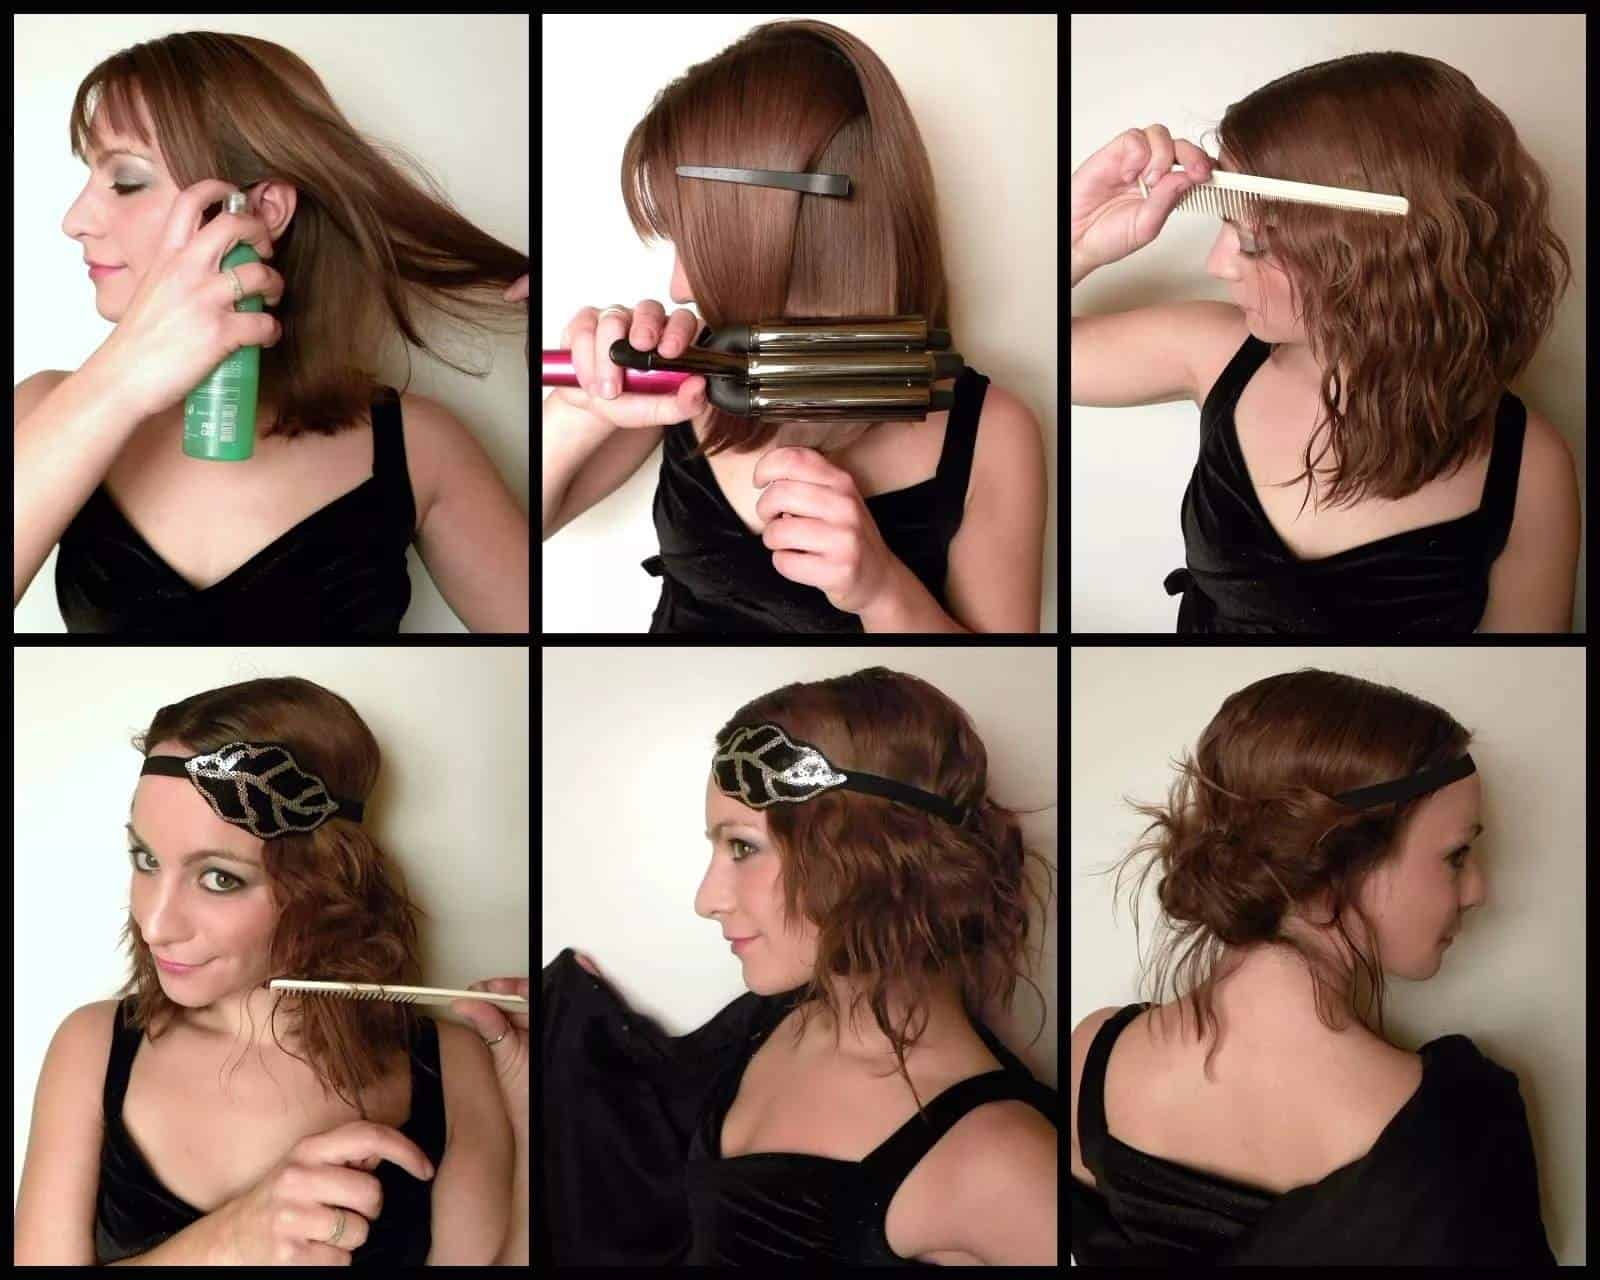 مرر بسرعة سيجارة يظهر  تسريحات شعر بسيطة للبيت يمكنك تطبيقها في خطوات – مجلة عروس